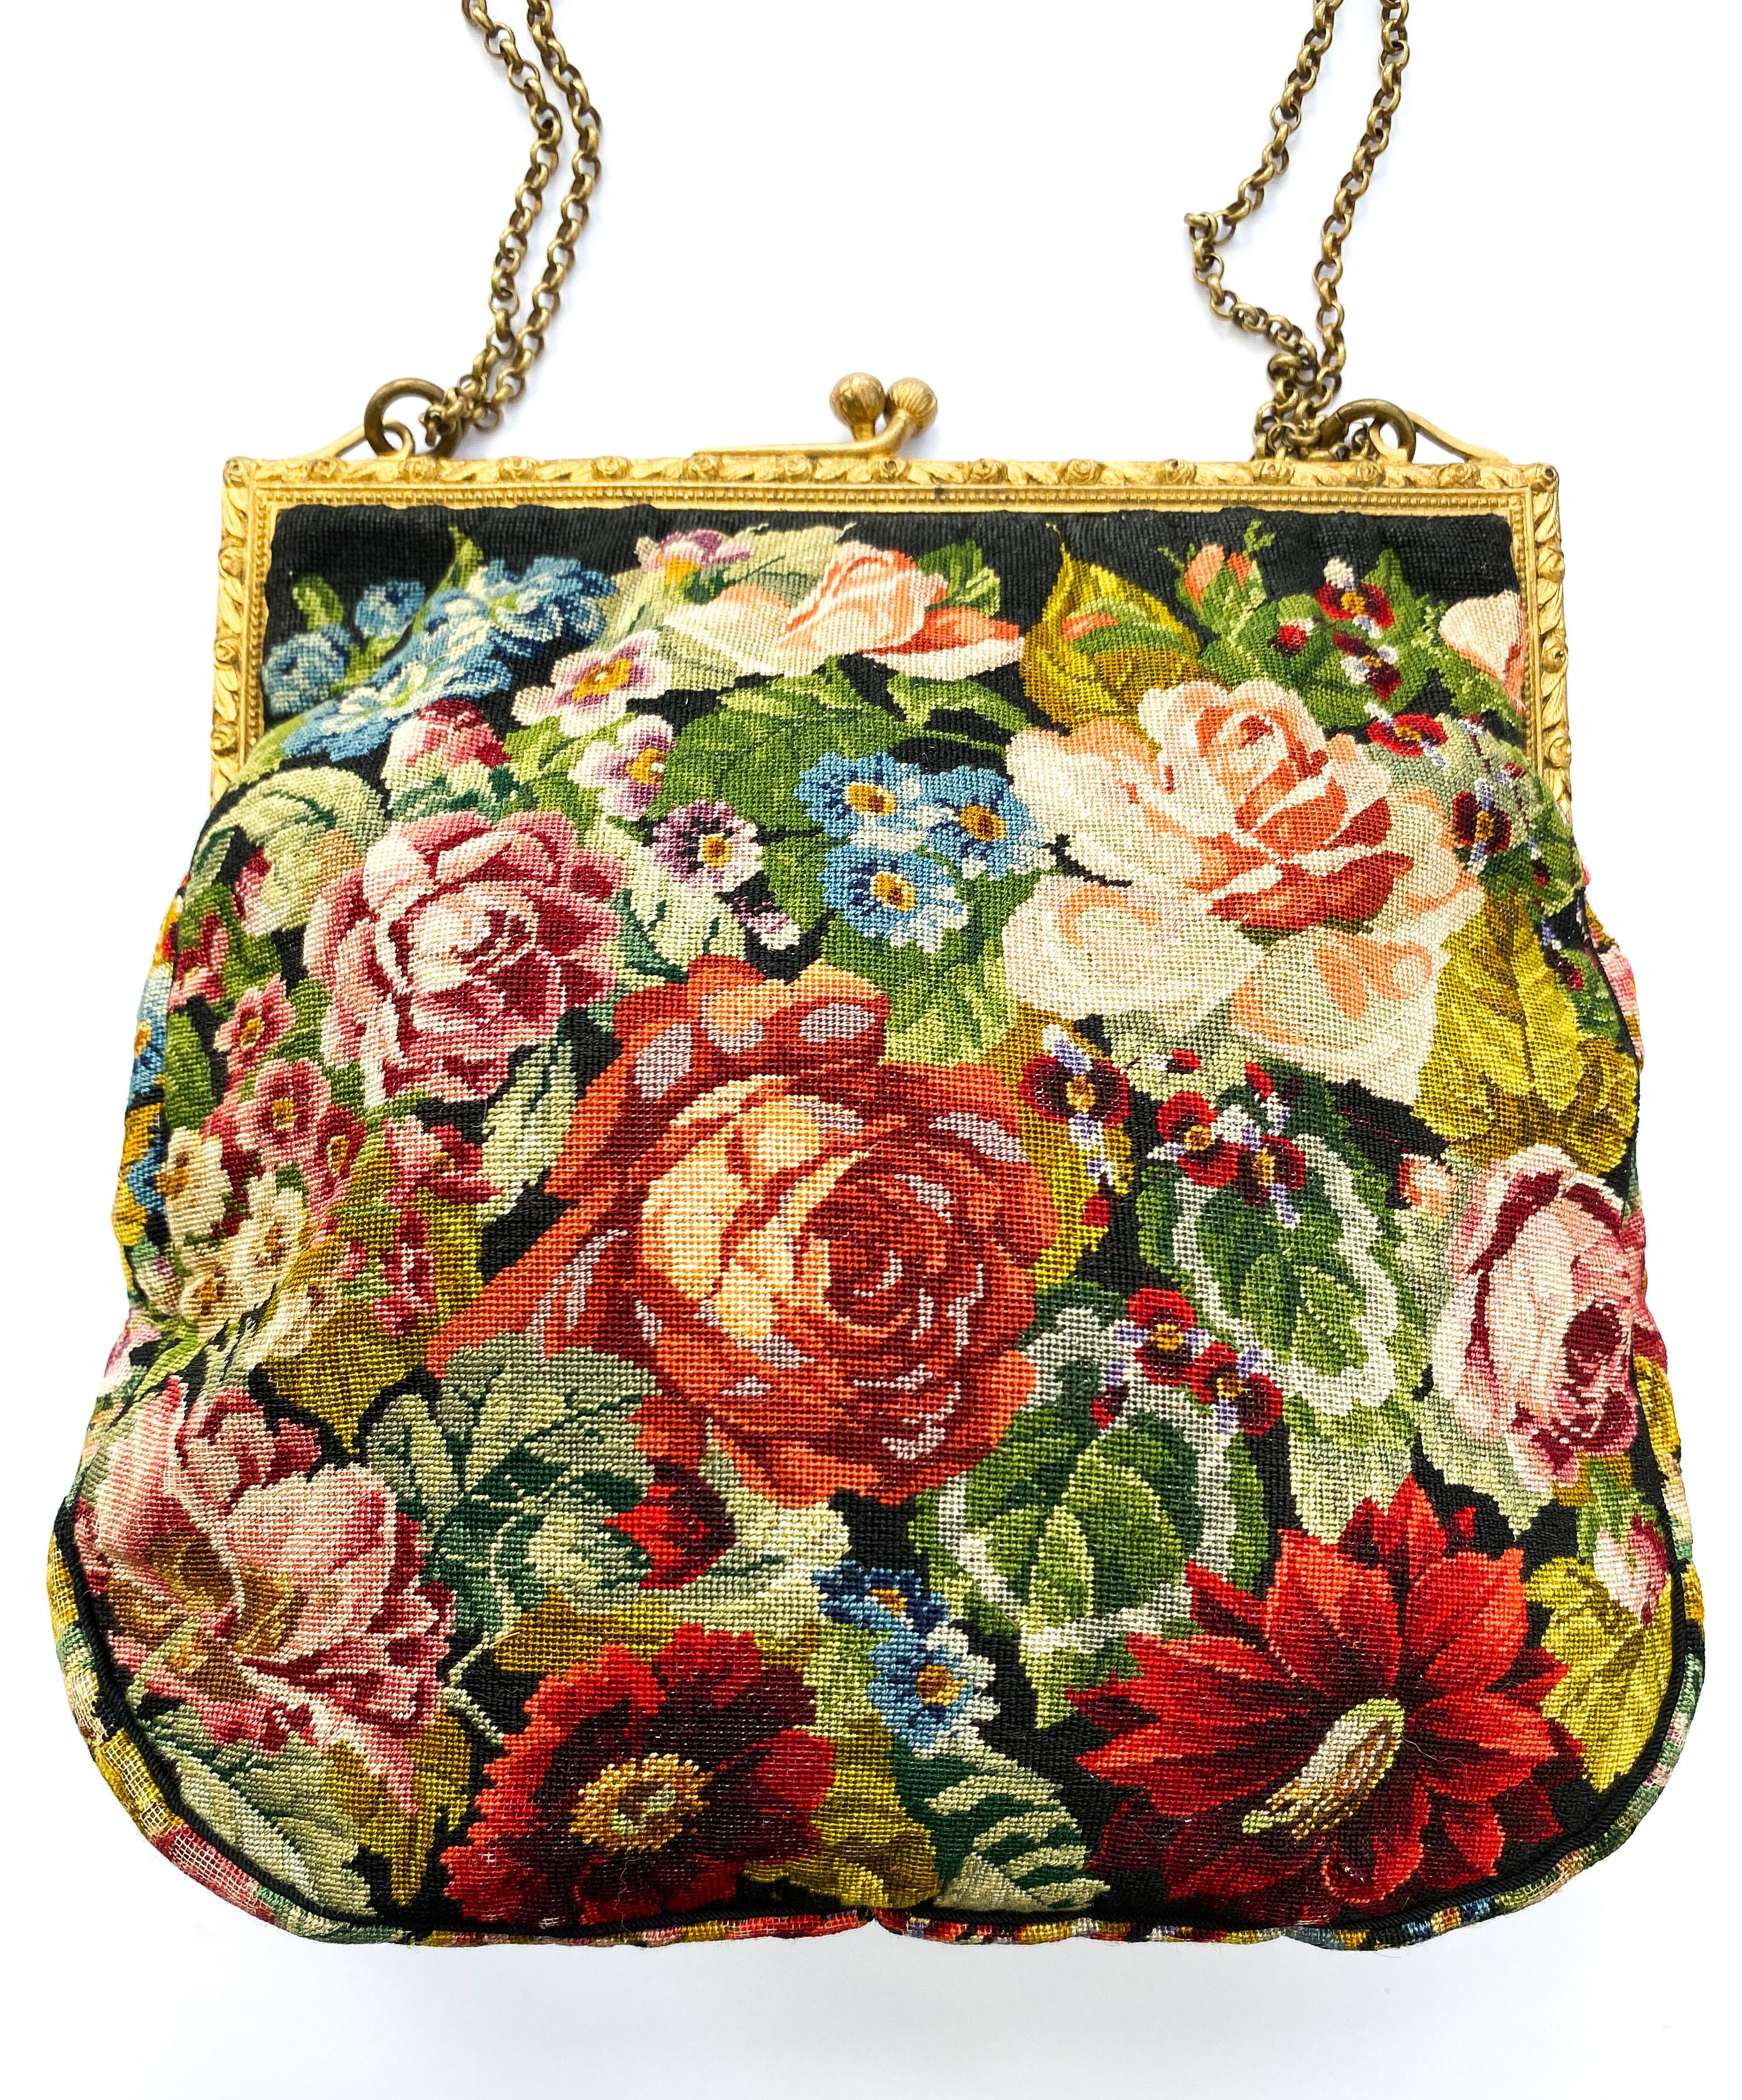 Eine bezaubernde und sehr attraktive Handtasche, perfekt für den Abend oder einen besonderen Anlass. Die Stickerei ist von höchster und feinster Qualität mit Rosen und einer Vielzahl von anderen Blumen und Blättern sowohl auf der Vorder- und